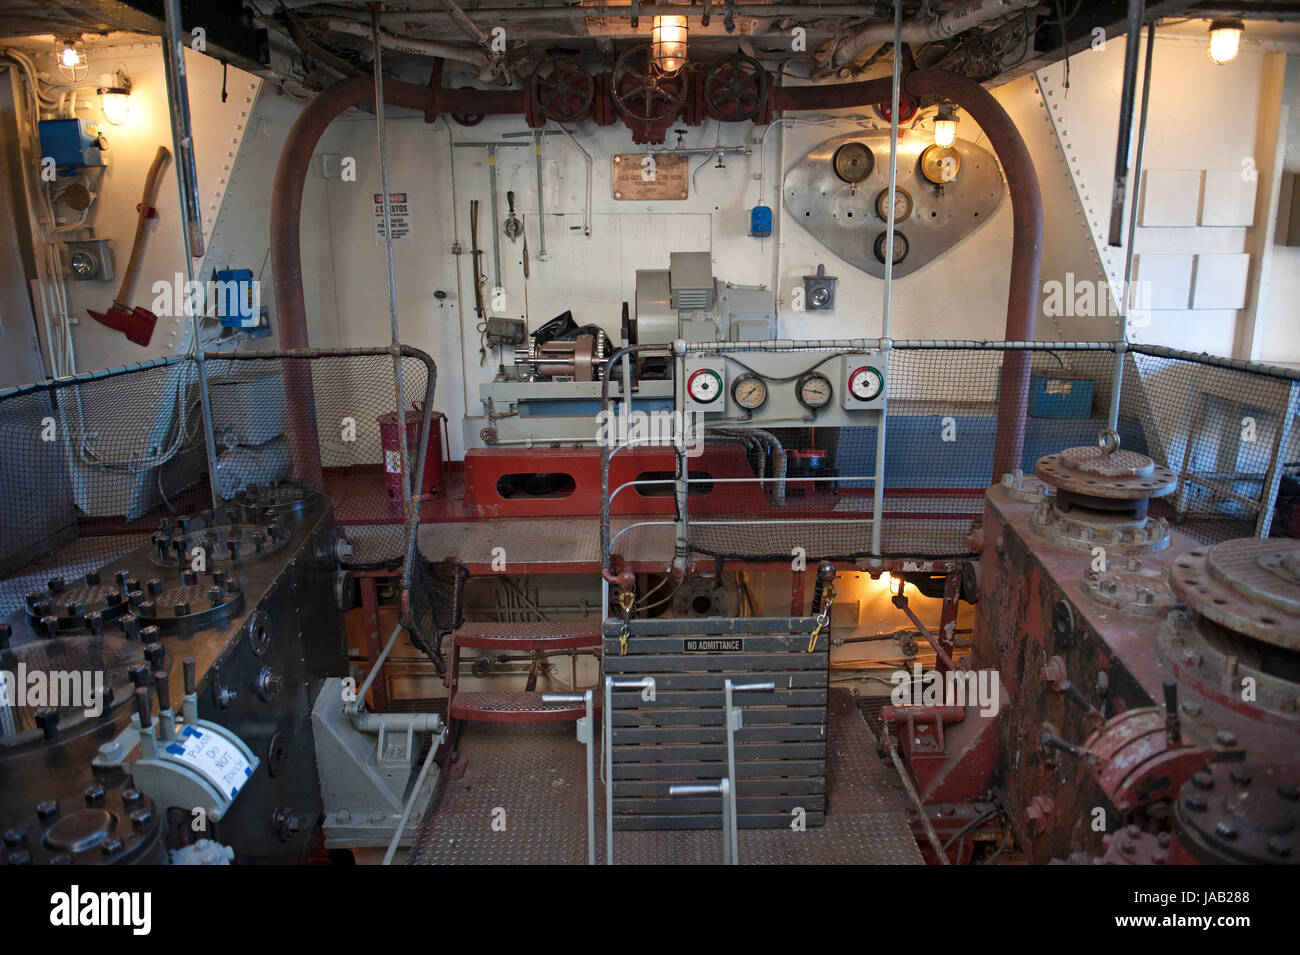 Der Maschinenraum auf dem Leuchtturm zart, Flieder, Ausschreibung der einzige Dampf betriebene Leuchtturm in den Vereinigten Staaten. Flieder, festgemacht am Pier 25 in Hudson Ri Stockfoto